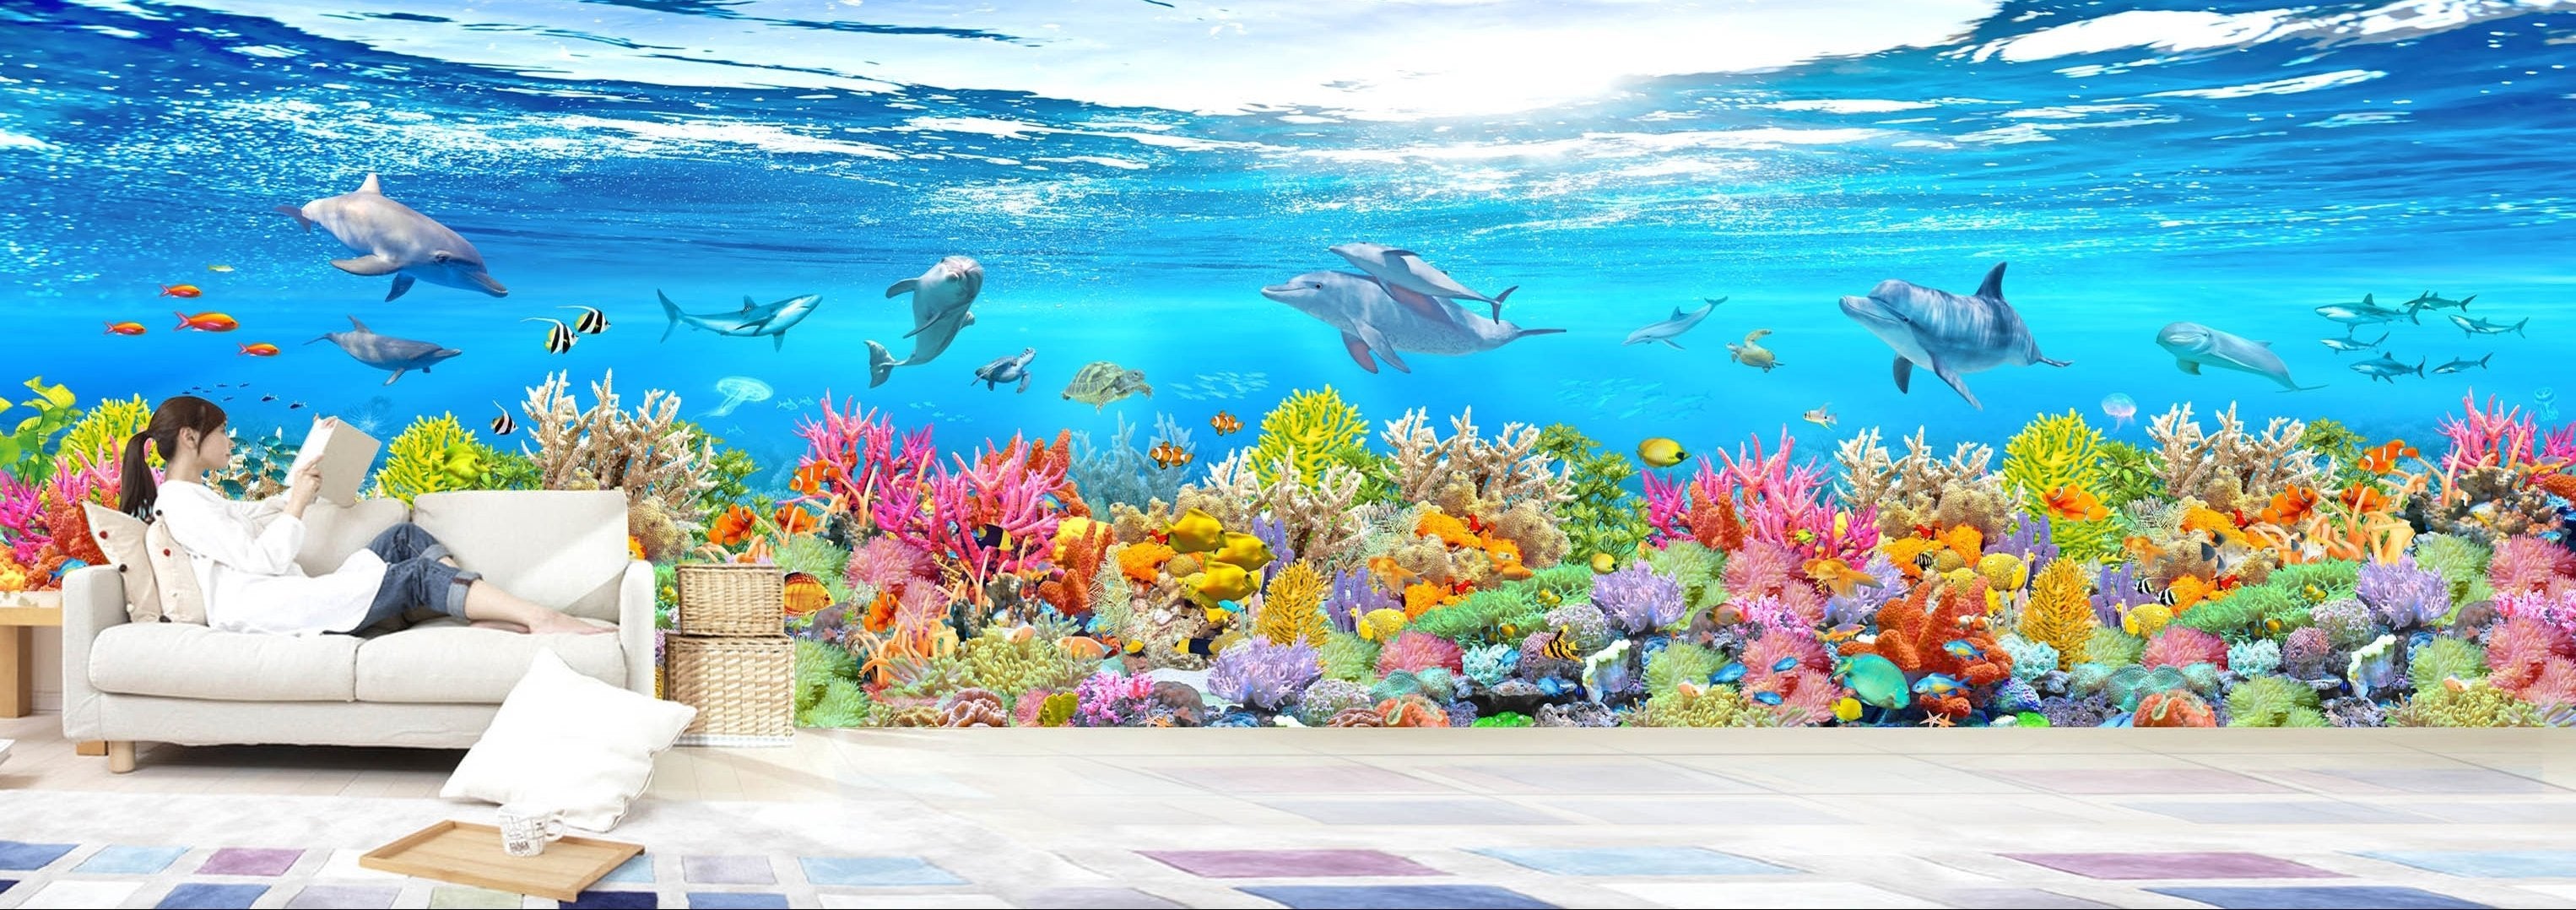 3D Multicolored Coral 307 Wallpaper AJ Wallpaper 